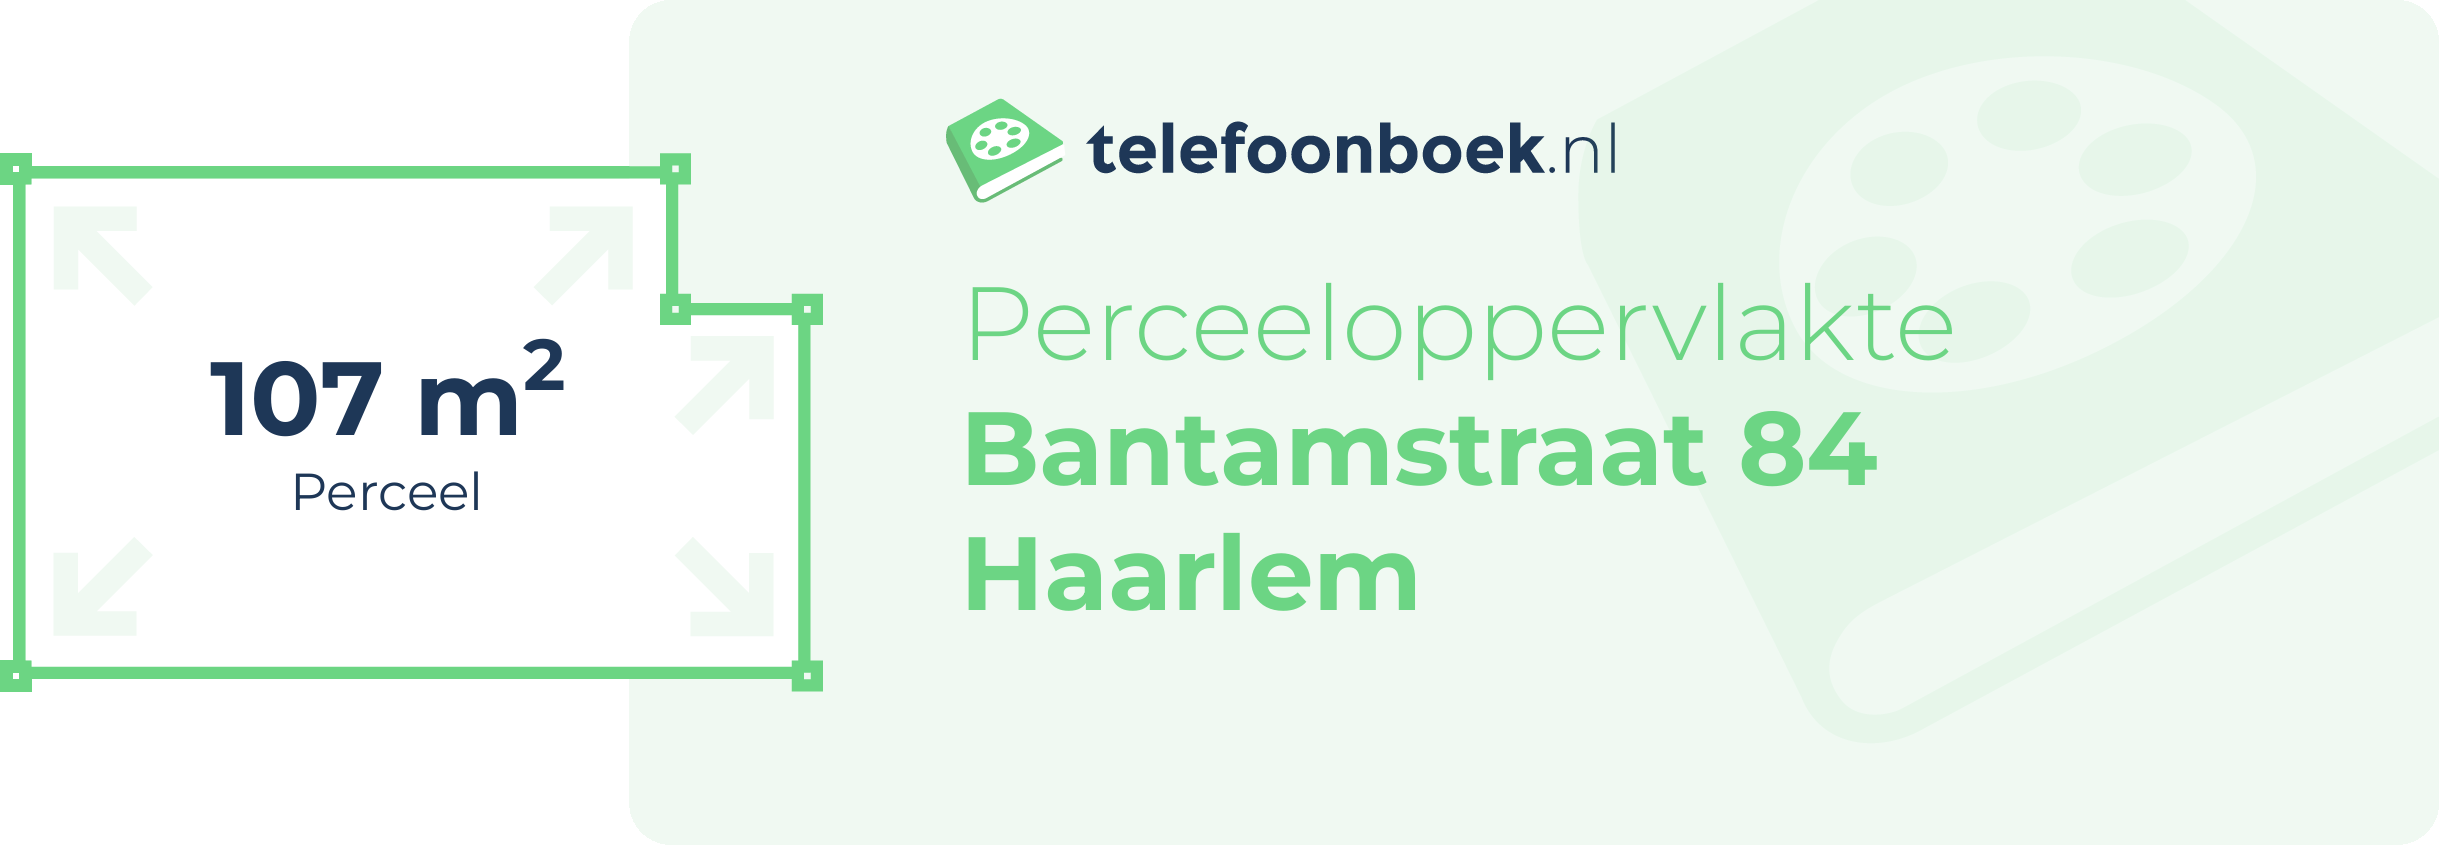 Perceeloppervlakte Bantamstraat 84 Haarlem